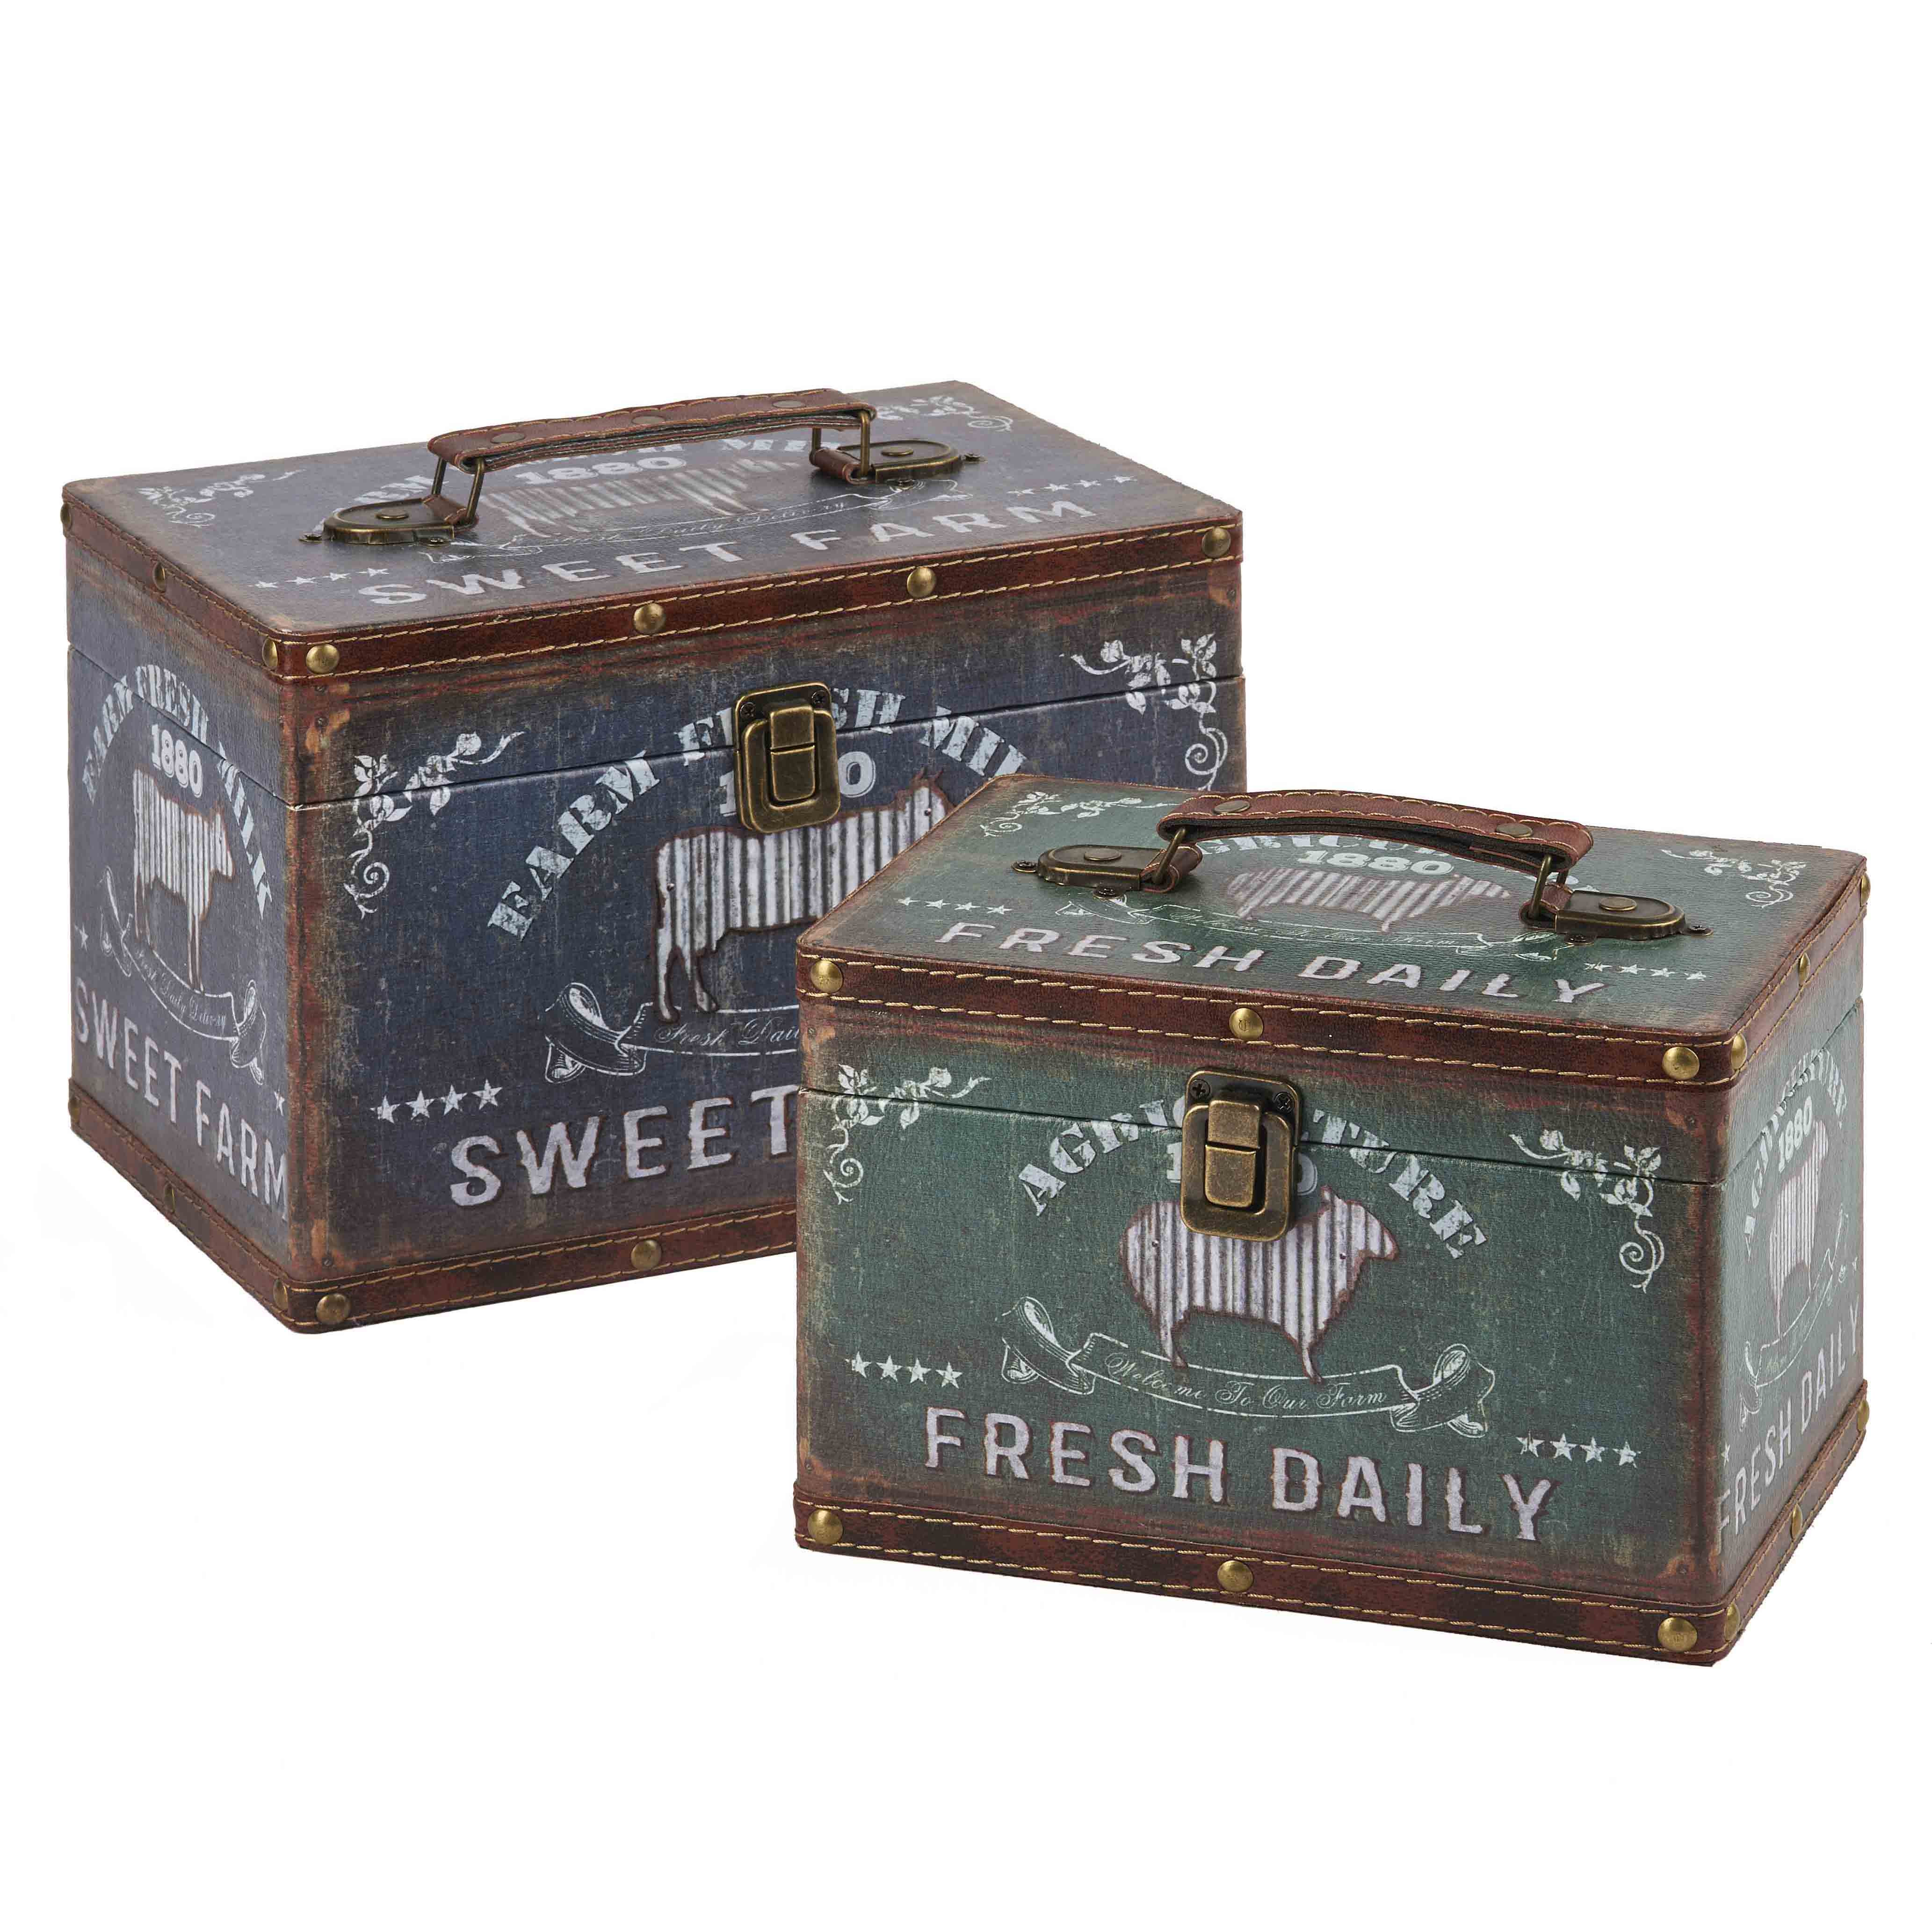 Vintage Suitcase Boxes Wholesale